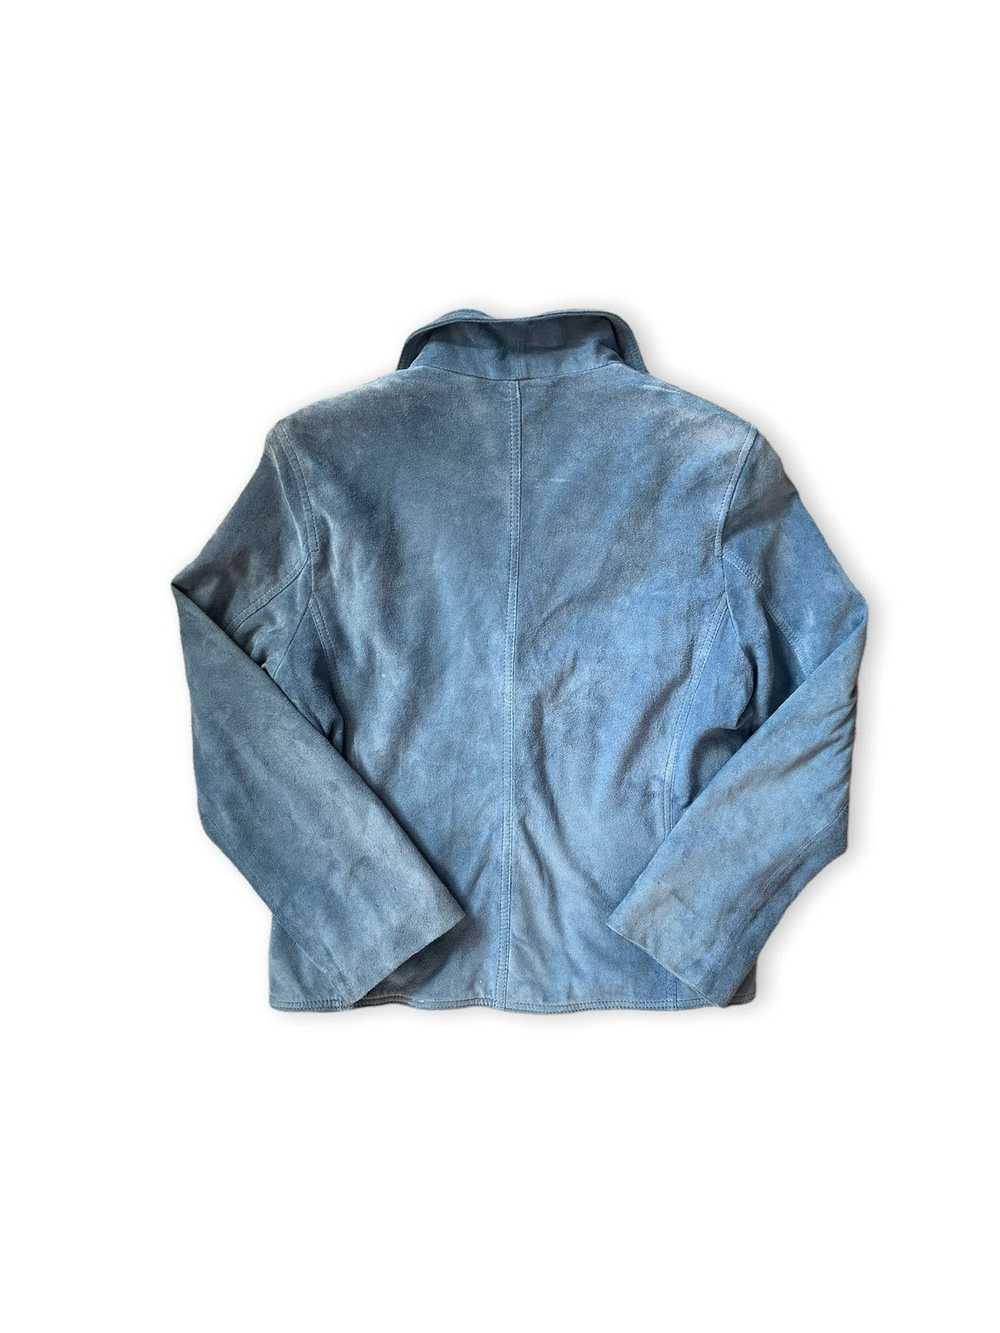 Vintage Tosca Blu blue 100% leather suede jacket … - image 4